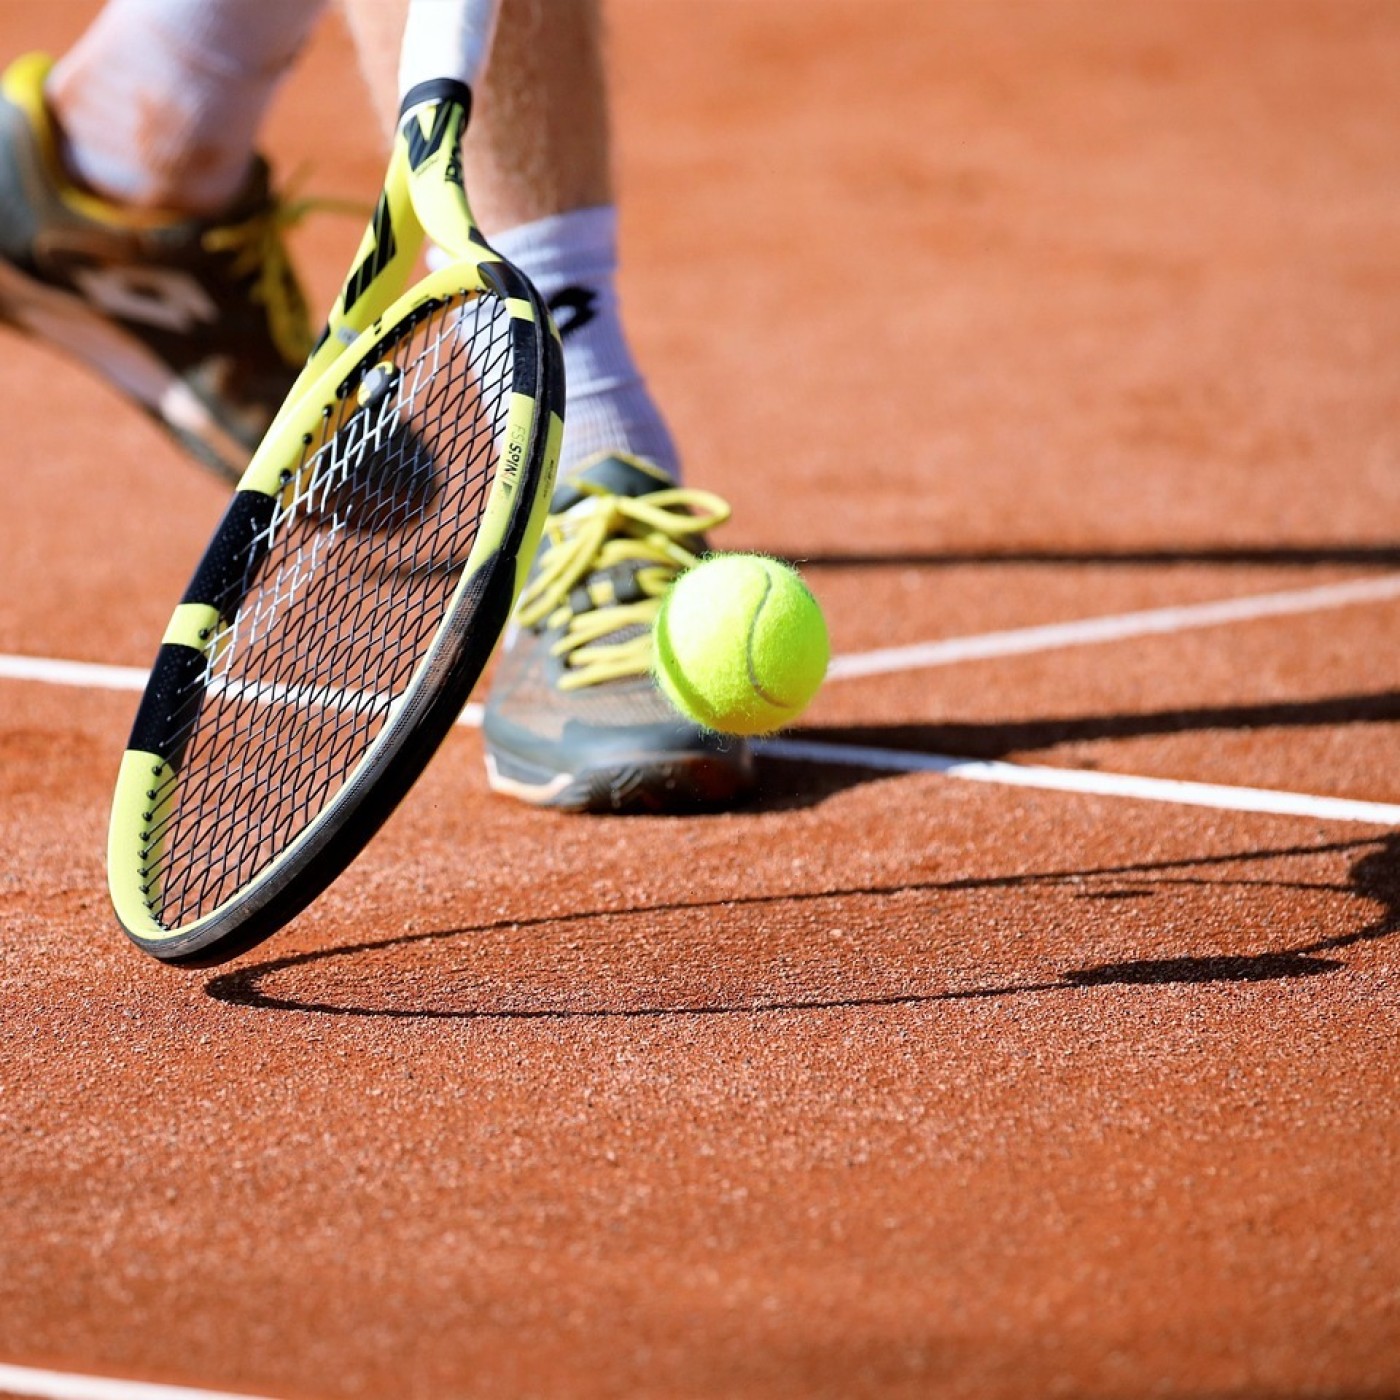 Tennis : Rafael Nadal ne sera pas à Monte-Carlo